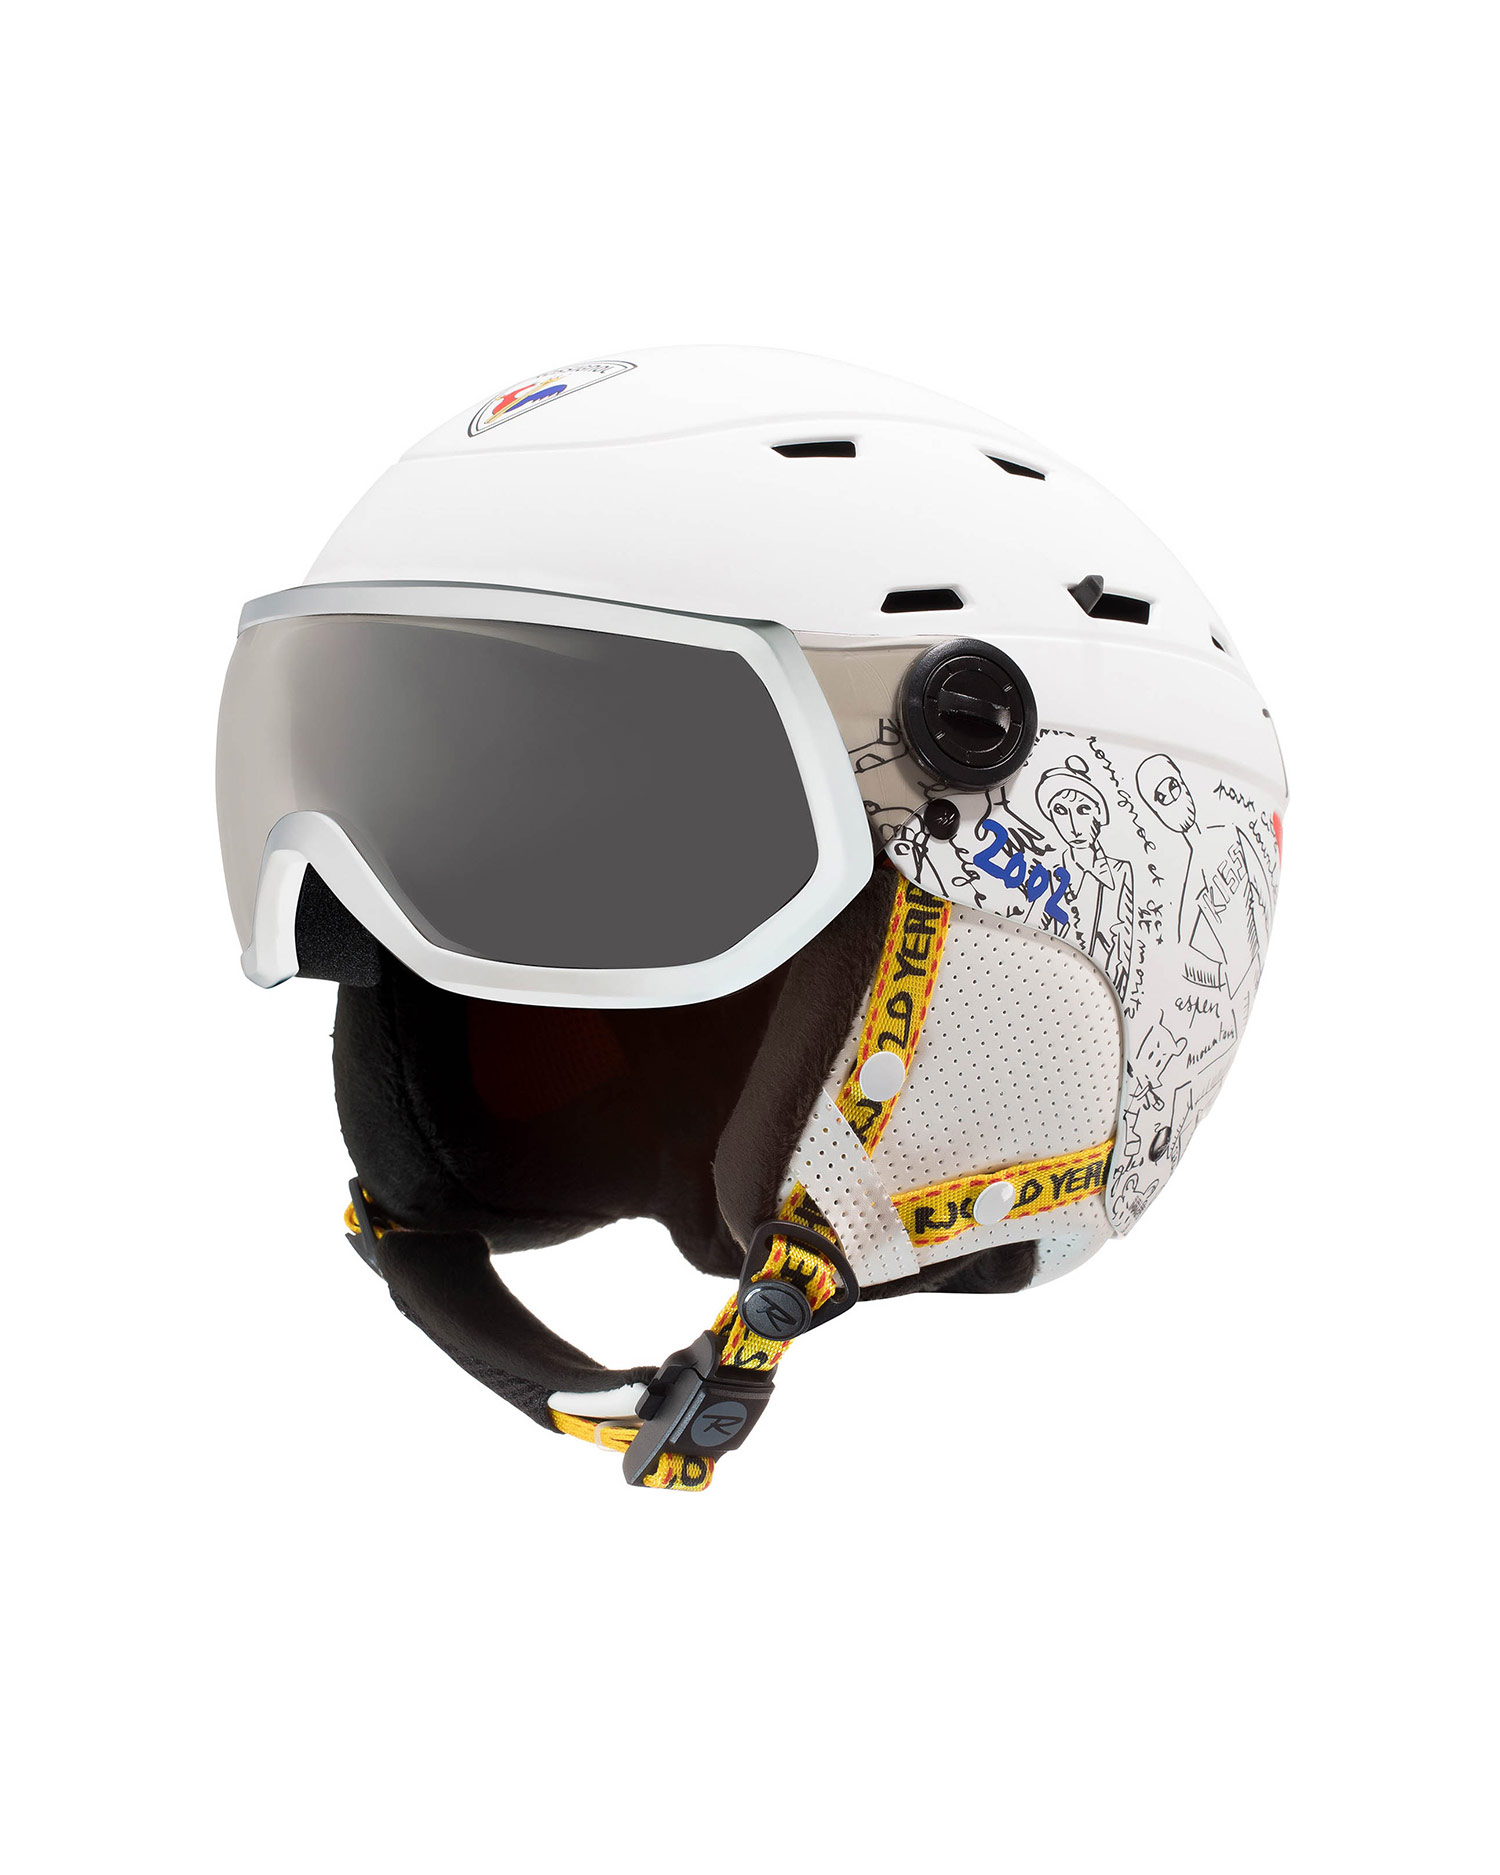 Casque de ski ROSSIGNOL ALLSPEED VISOR IMP PHOTOC JCC ski helmet  rkkh400-white | S'portofino